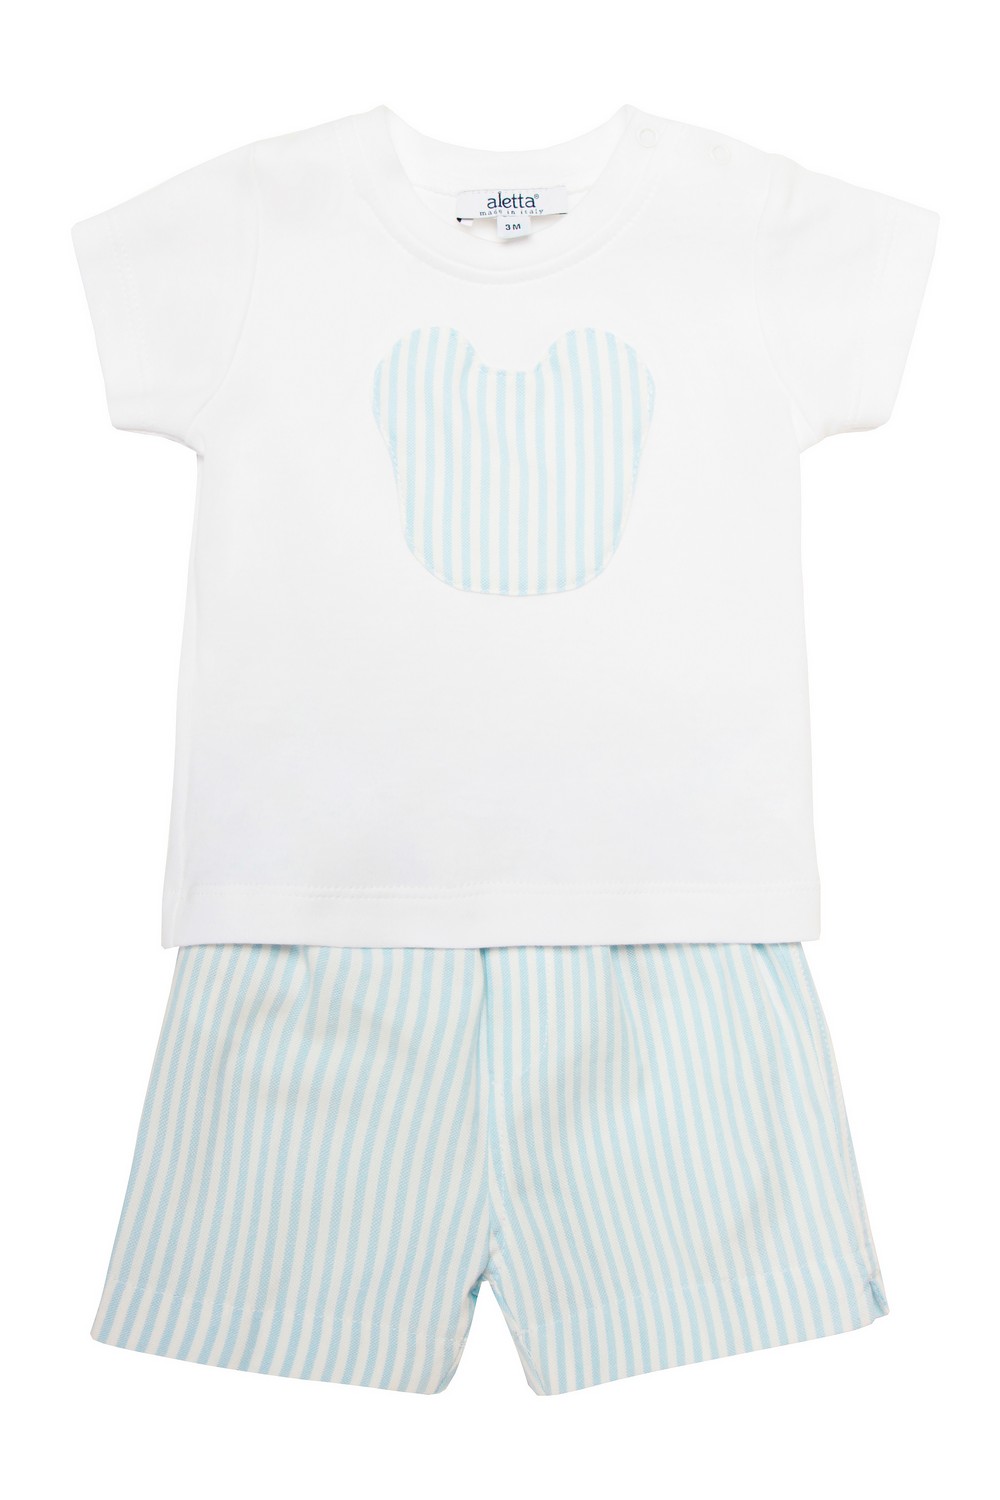 Aletta Baby Комплект из футболки и шорт в полоску